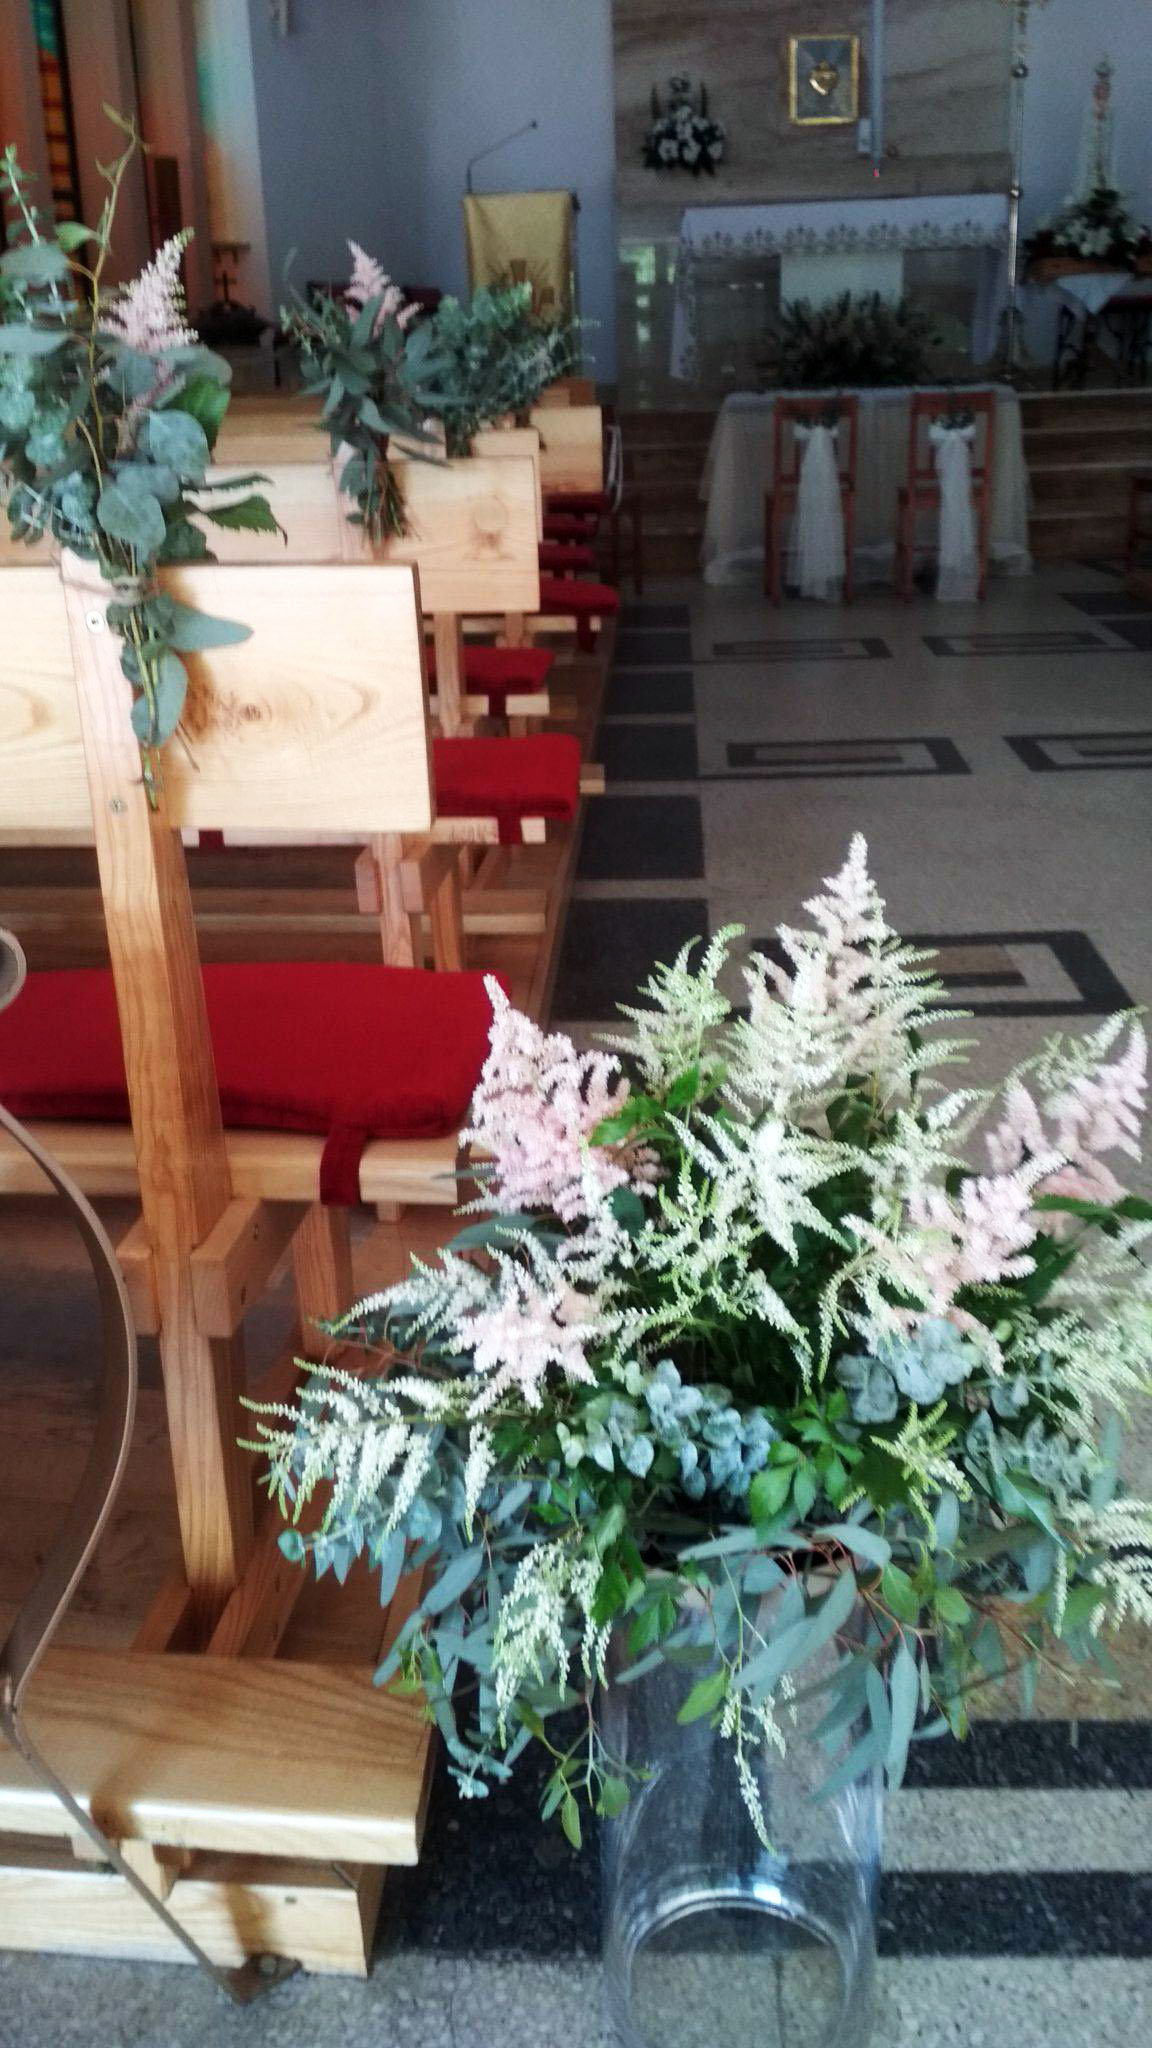 dekoracja ślubna kościoła tawułka i eukaliptus